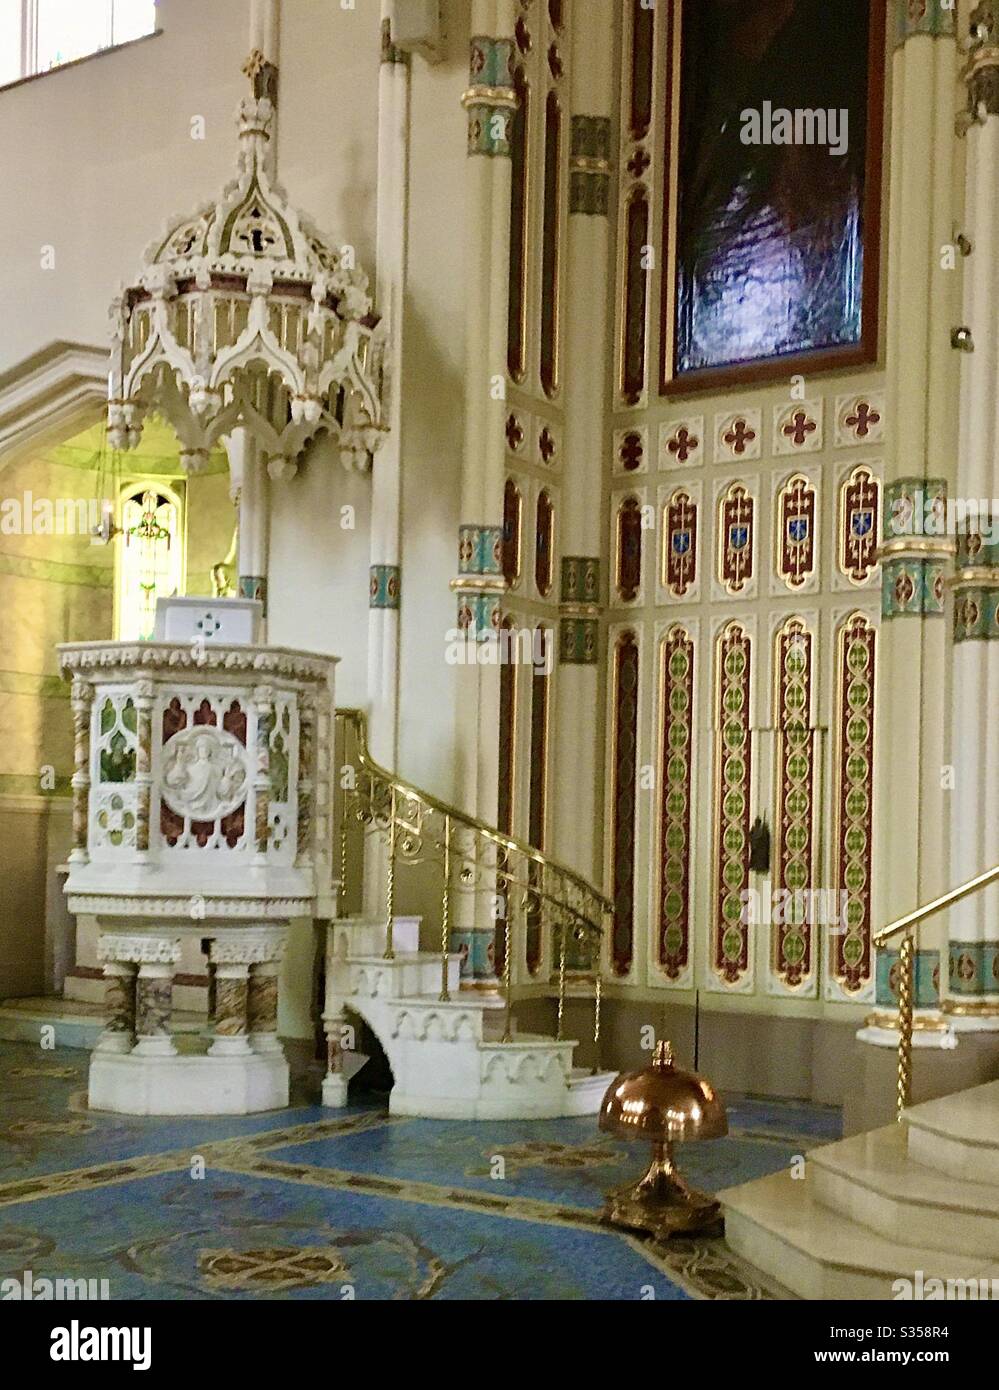 Il bellissimo pulpito della Chiesa Cattolica Romana di San Malachio di Belfast, Irlanda del Nord. L'interno della chiesa, nello stile del periodo Tudor (1485-1603), ha vinto molti premi per il suo restauro. Foto Stock